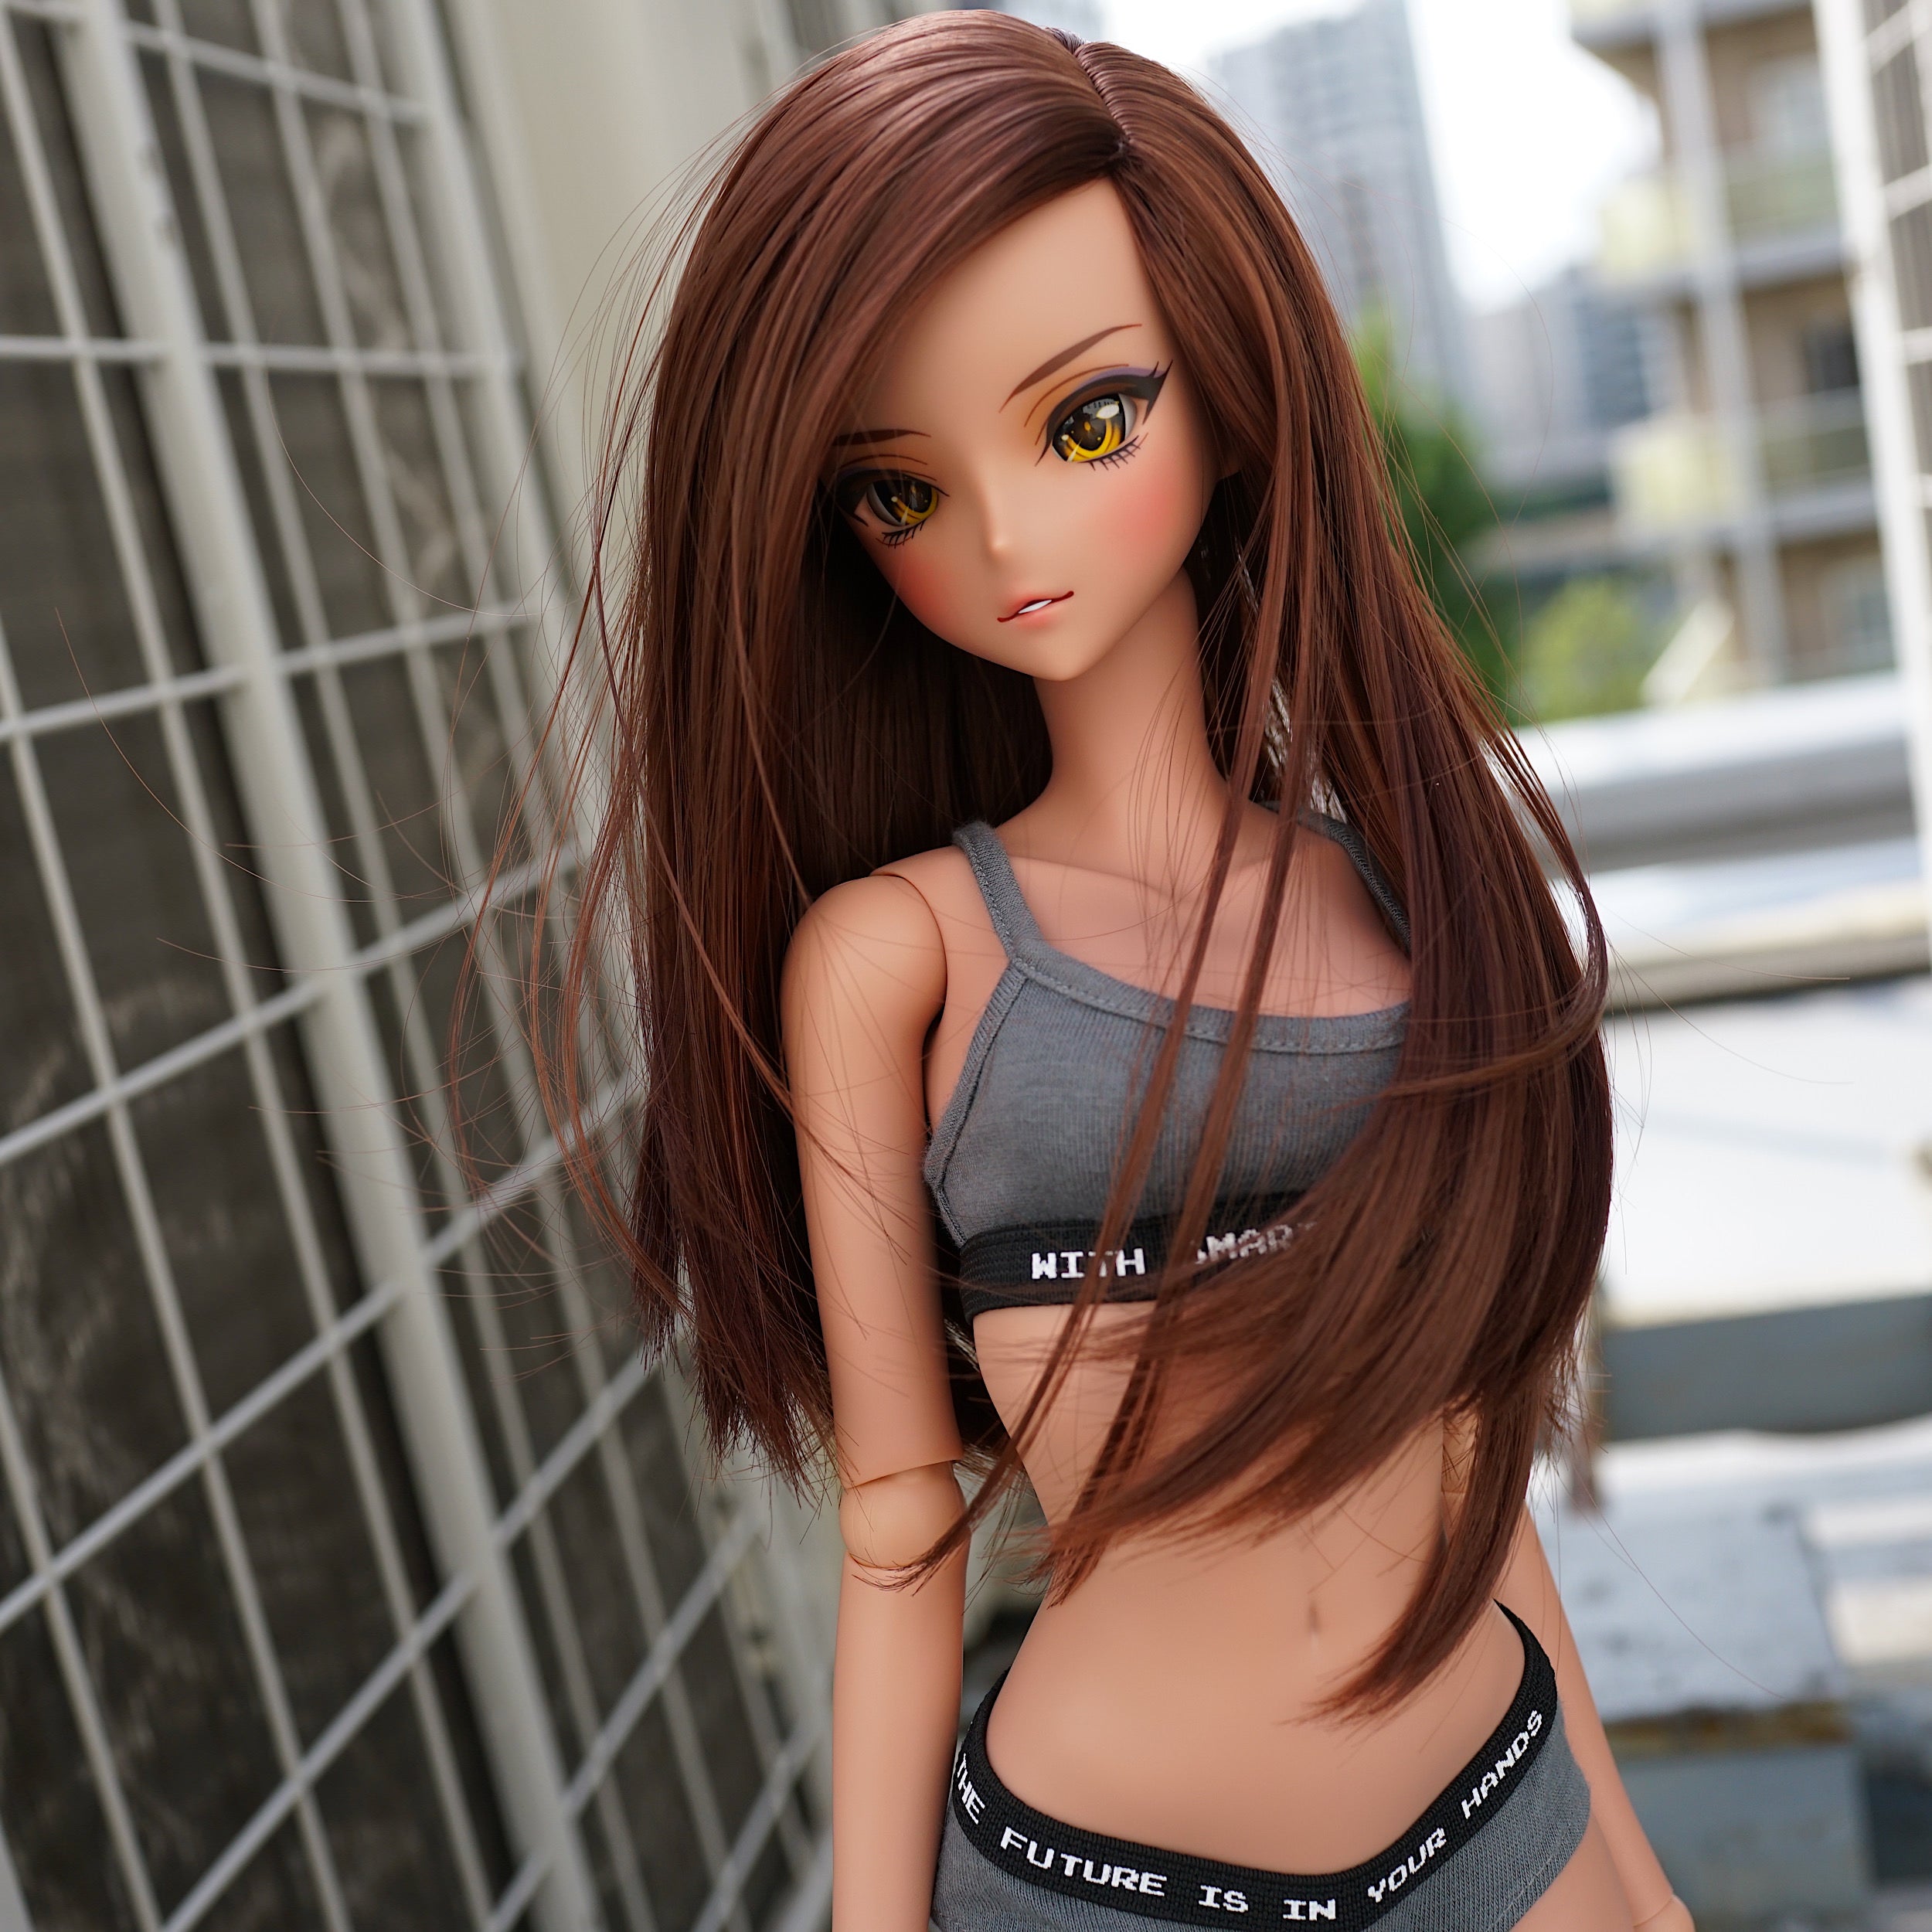 Mirai Cosplay  Fantasy art dolls Anime dolls Cute dolls